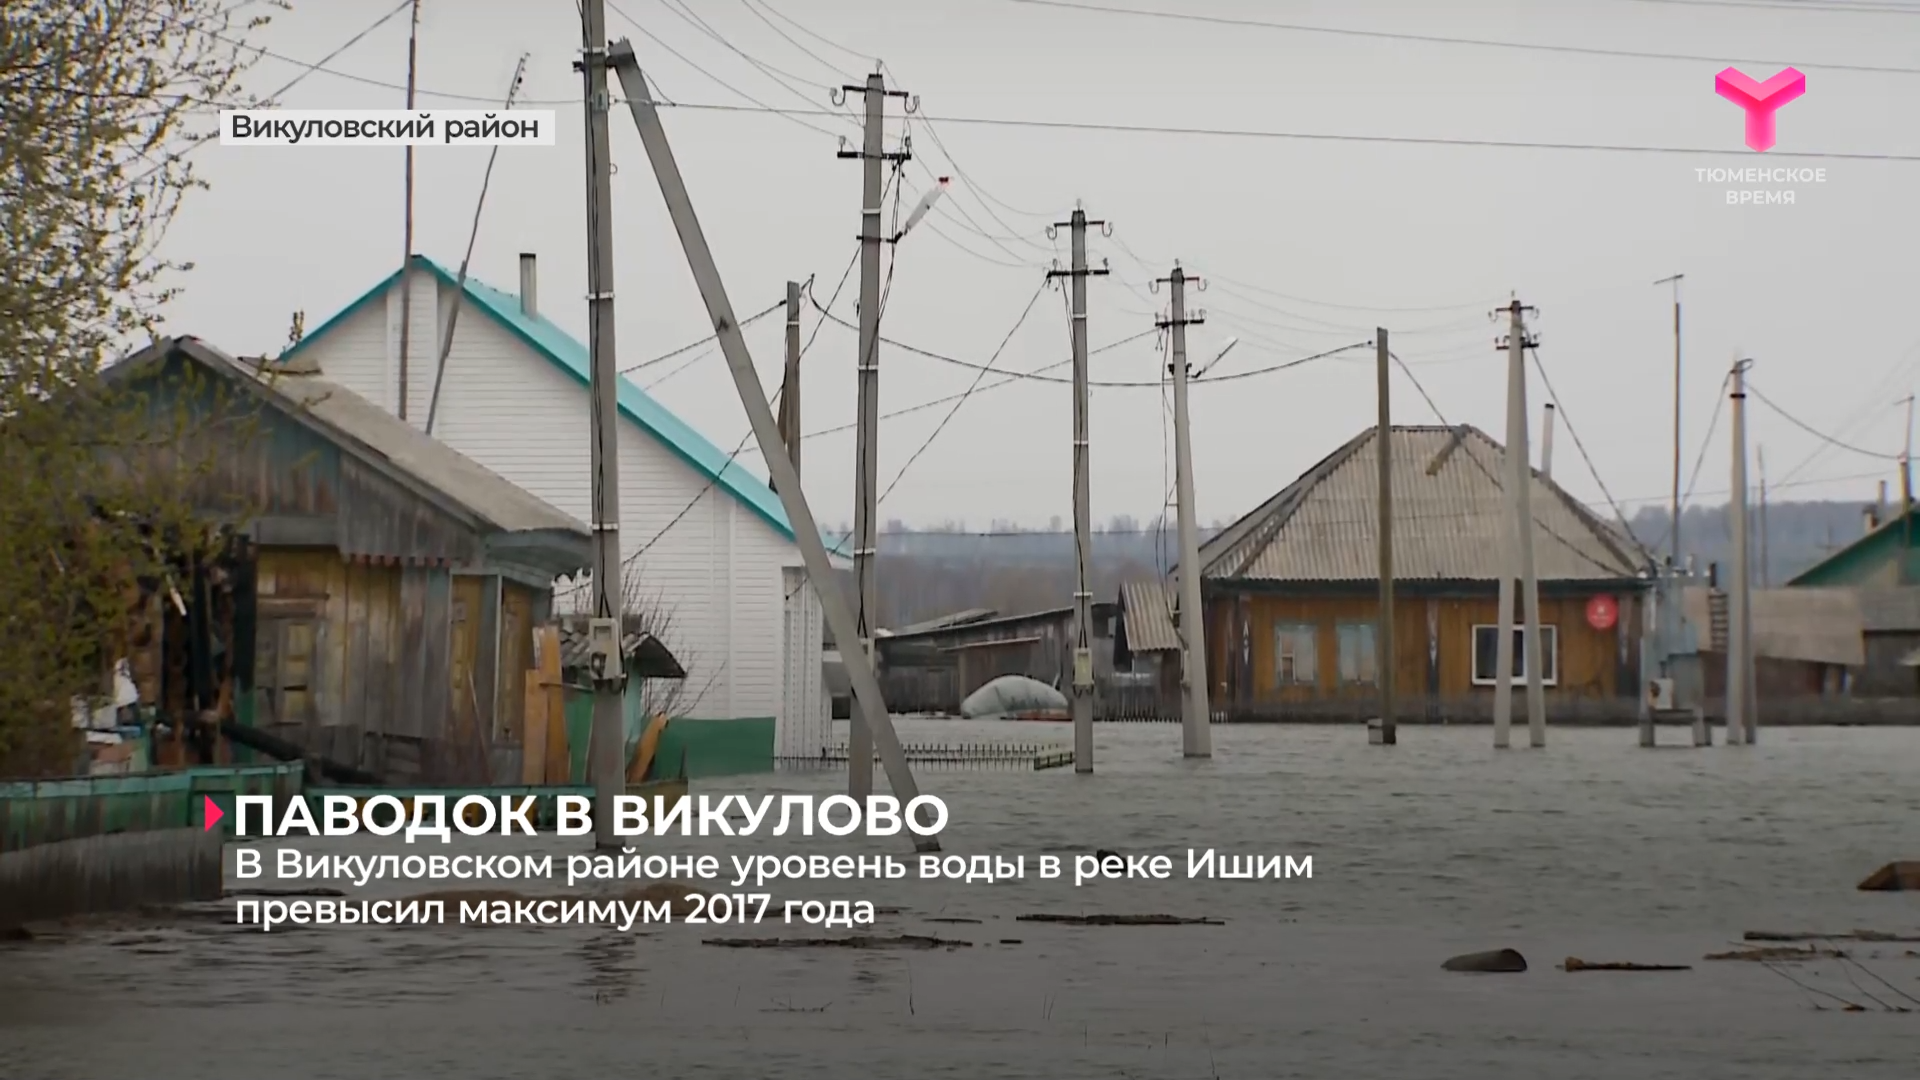 В Викуловском районе уровень воды в реке Ишим превысил максимум 2017 года